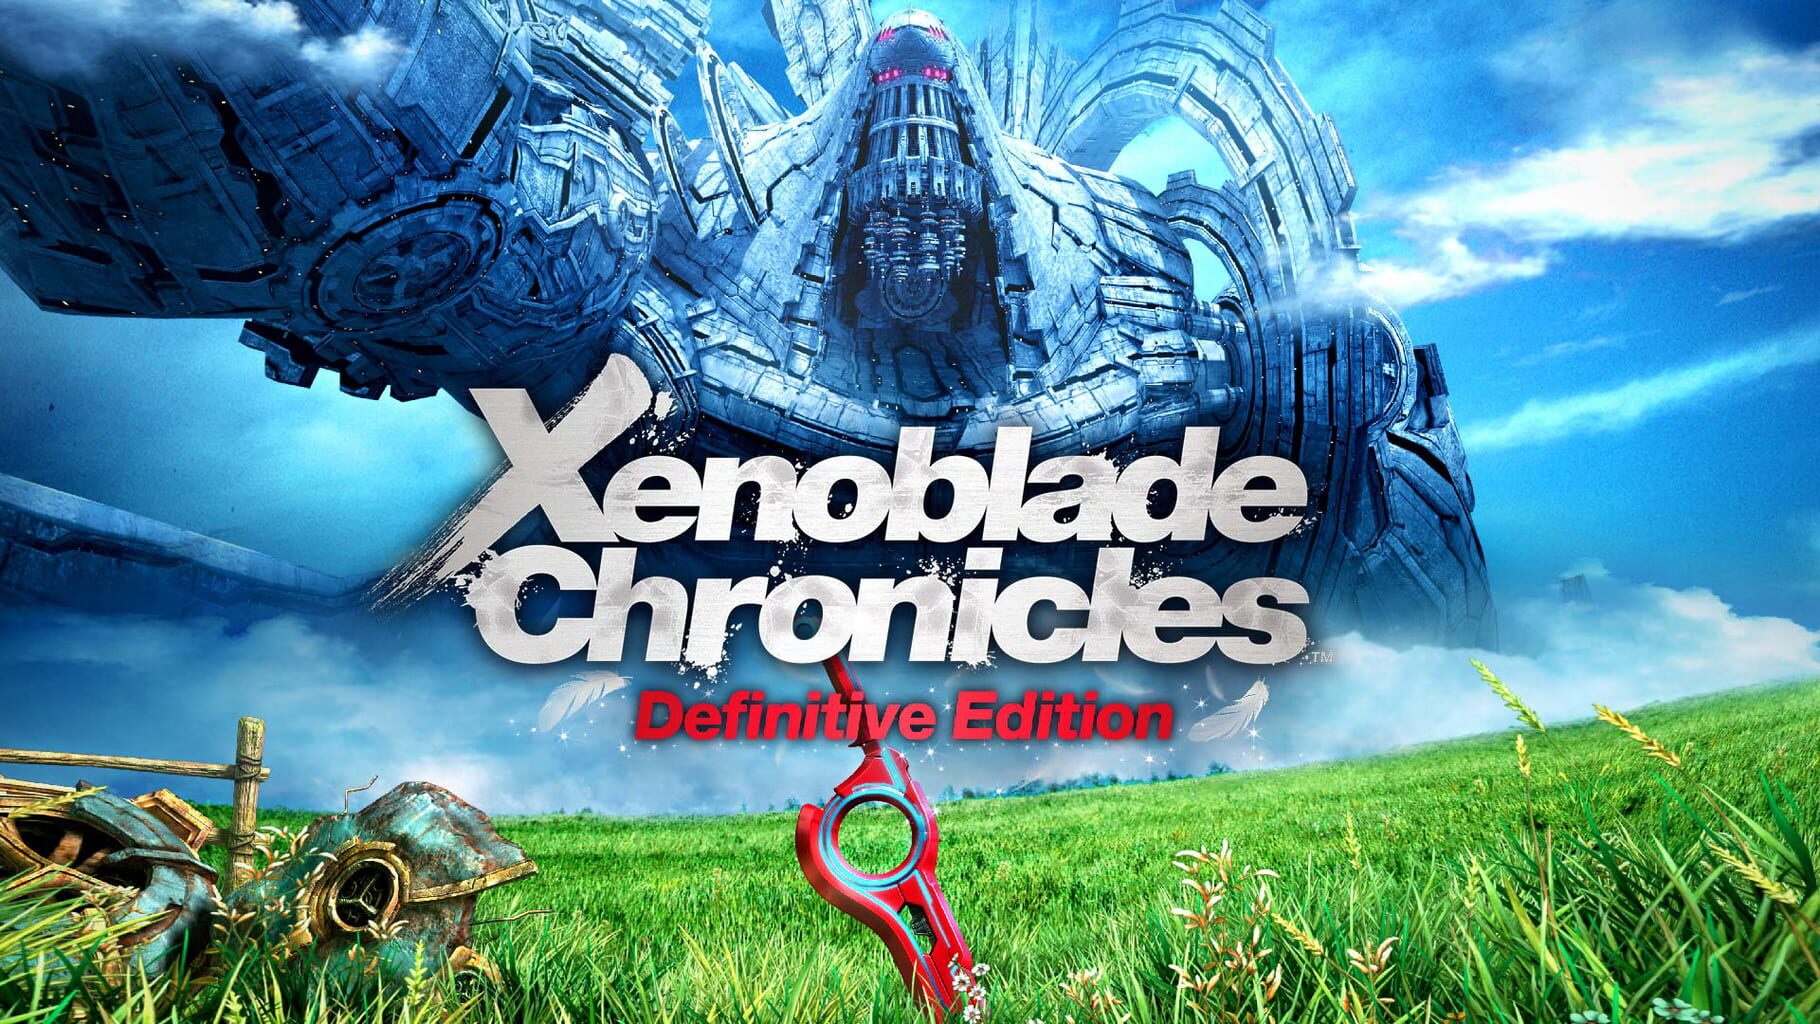 Arte - Xenoblade Chronicles: Definitive Edition